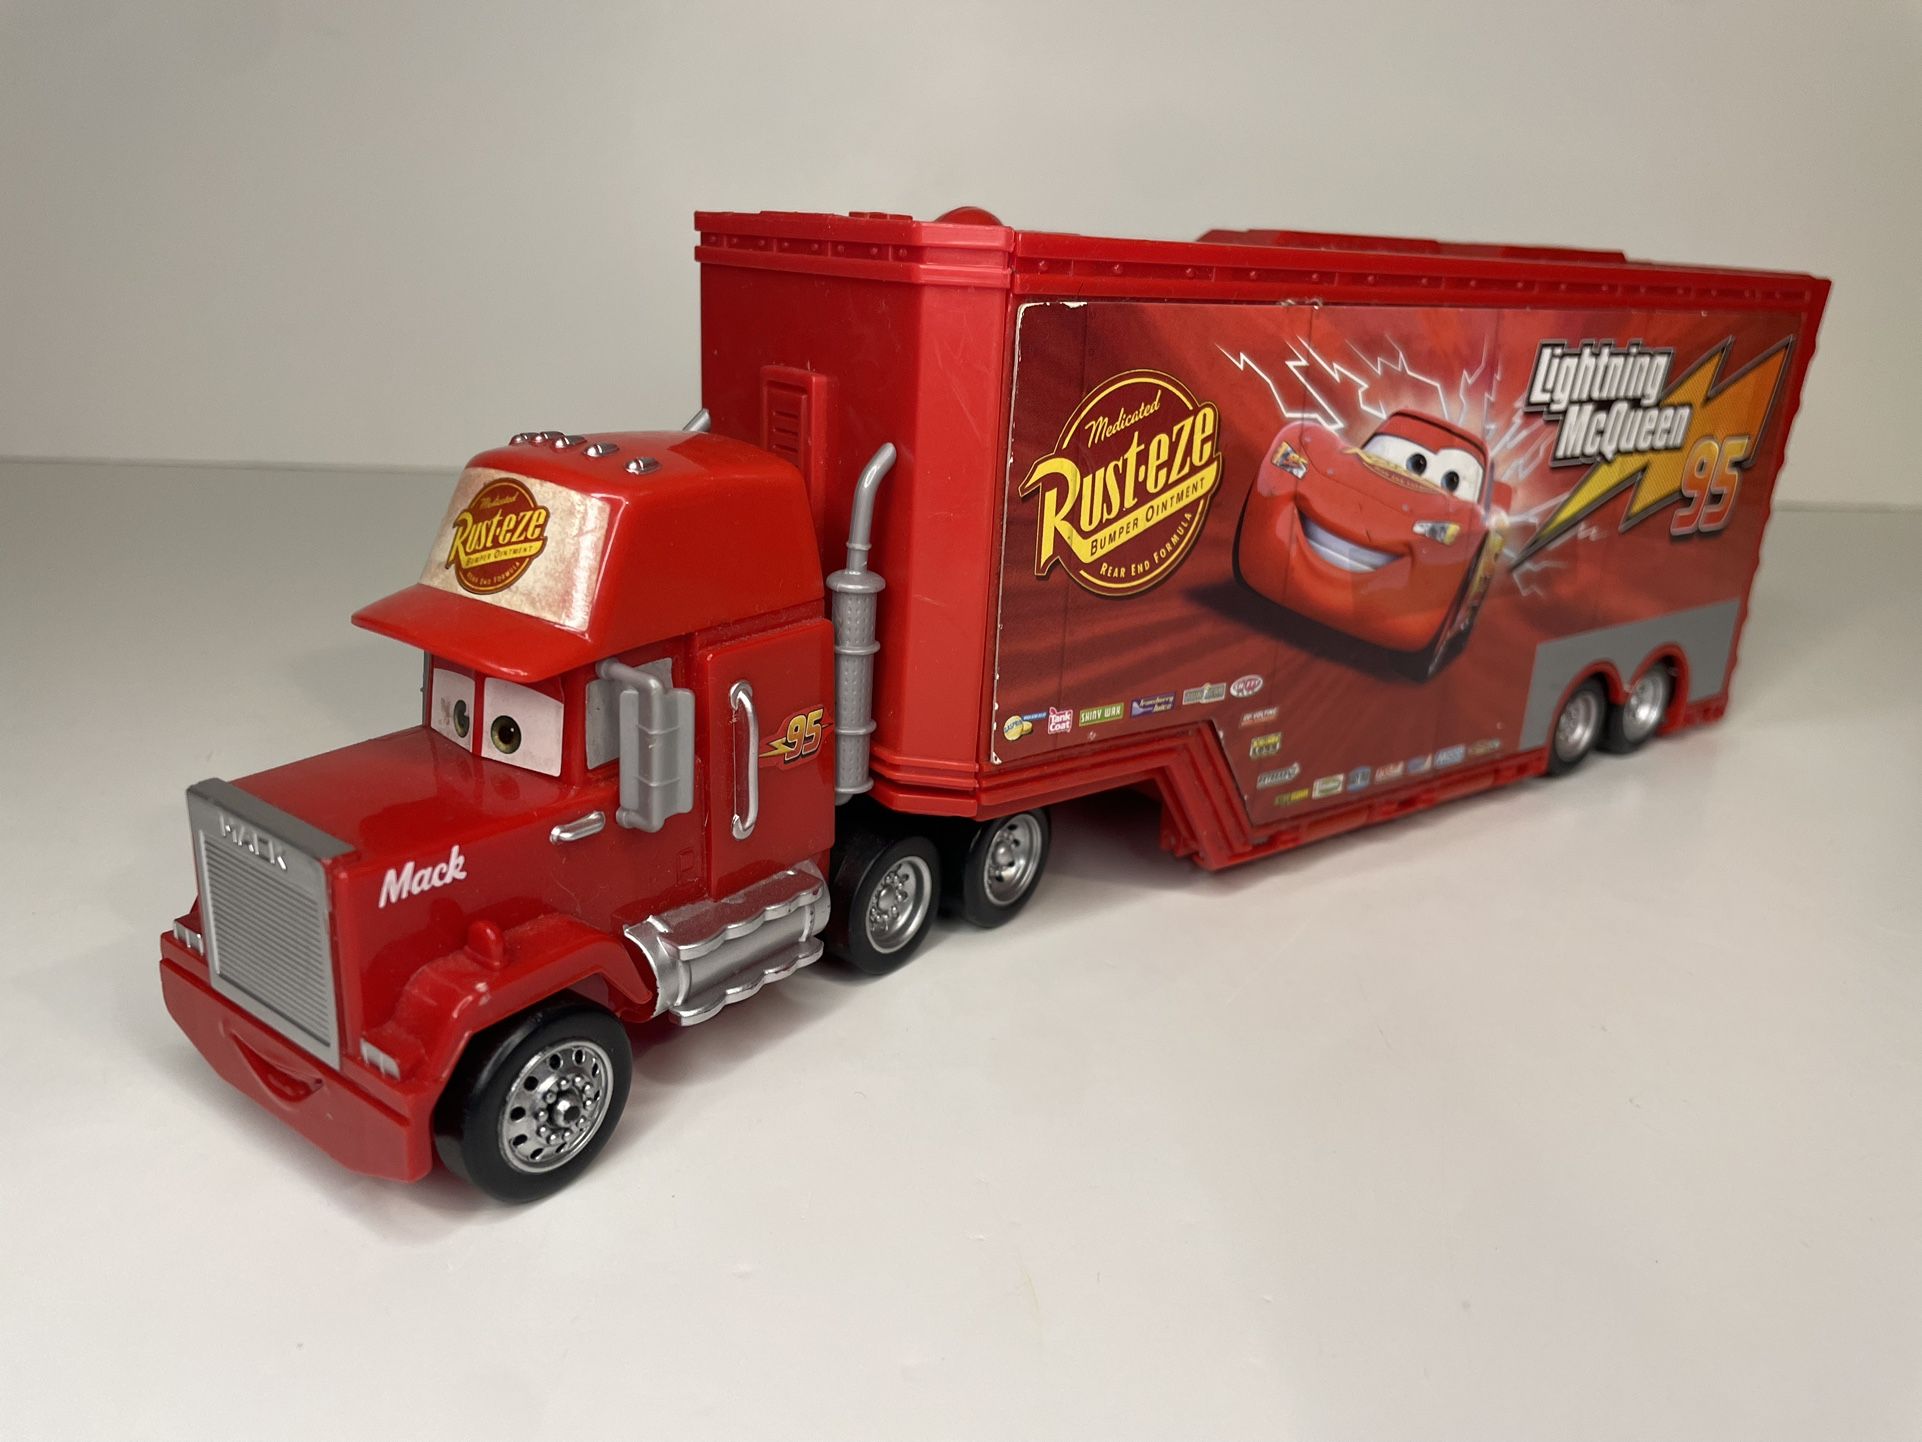 Disney Pixar cars Mack truck hauler